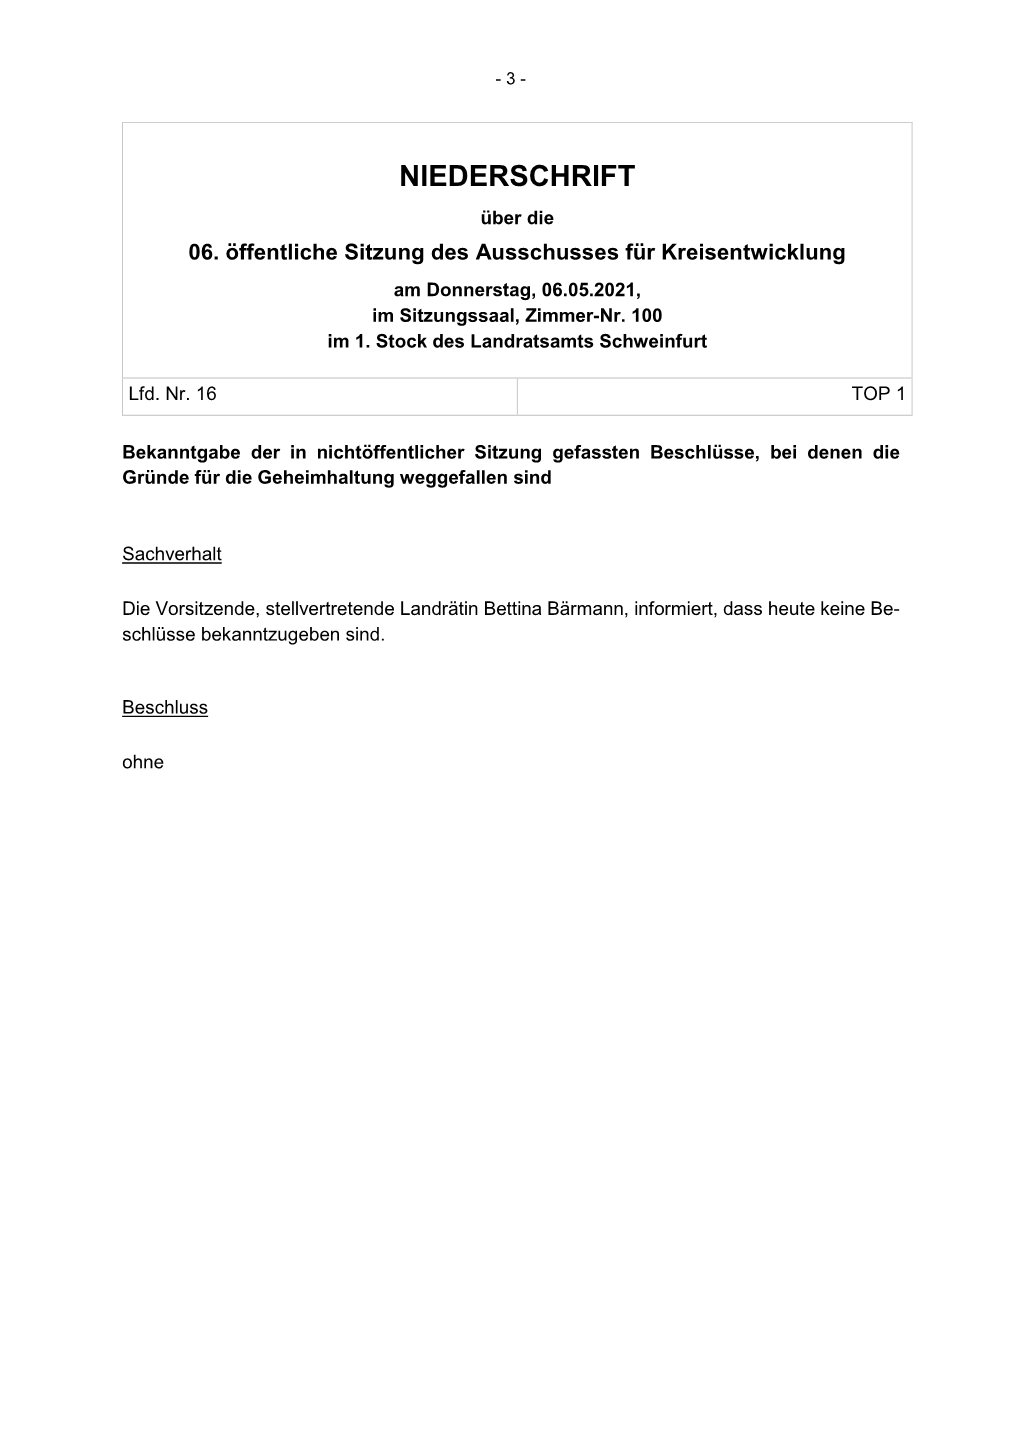 Öffentliche Sitzung Des Ausschusses Für Kreisentwicklung Am Donnerstag, 06.05.2021, Im Sitzungssaal, Zimmer-Nr